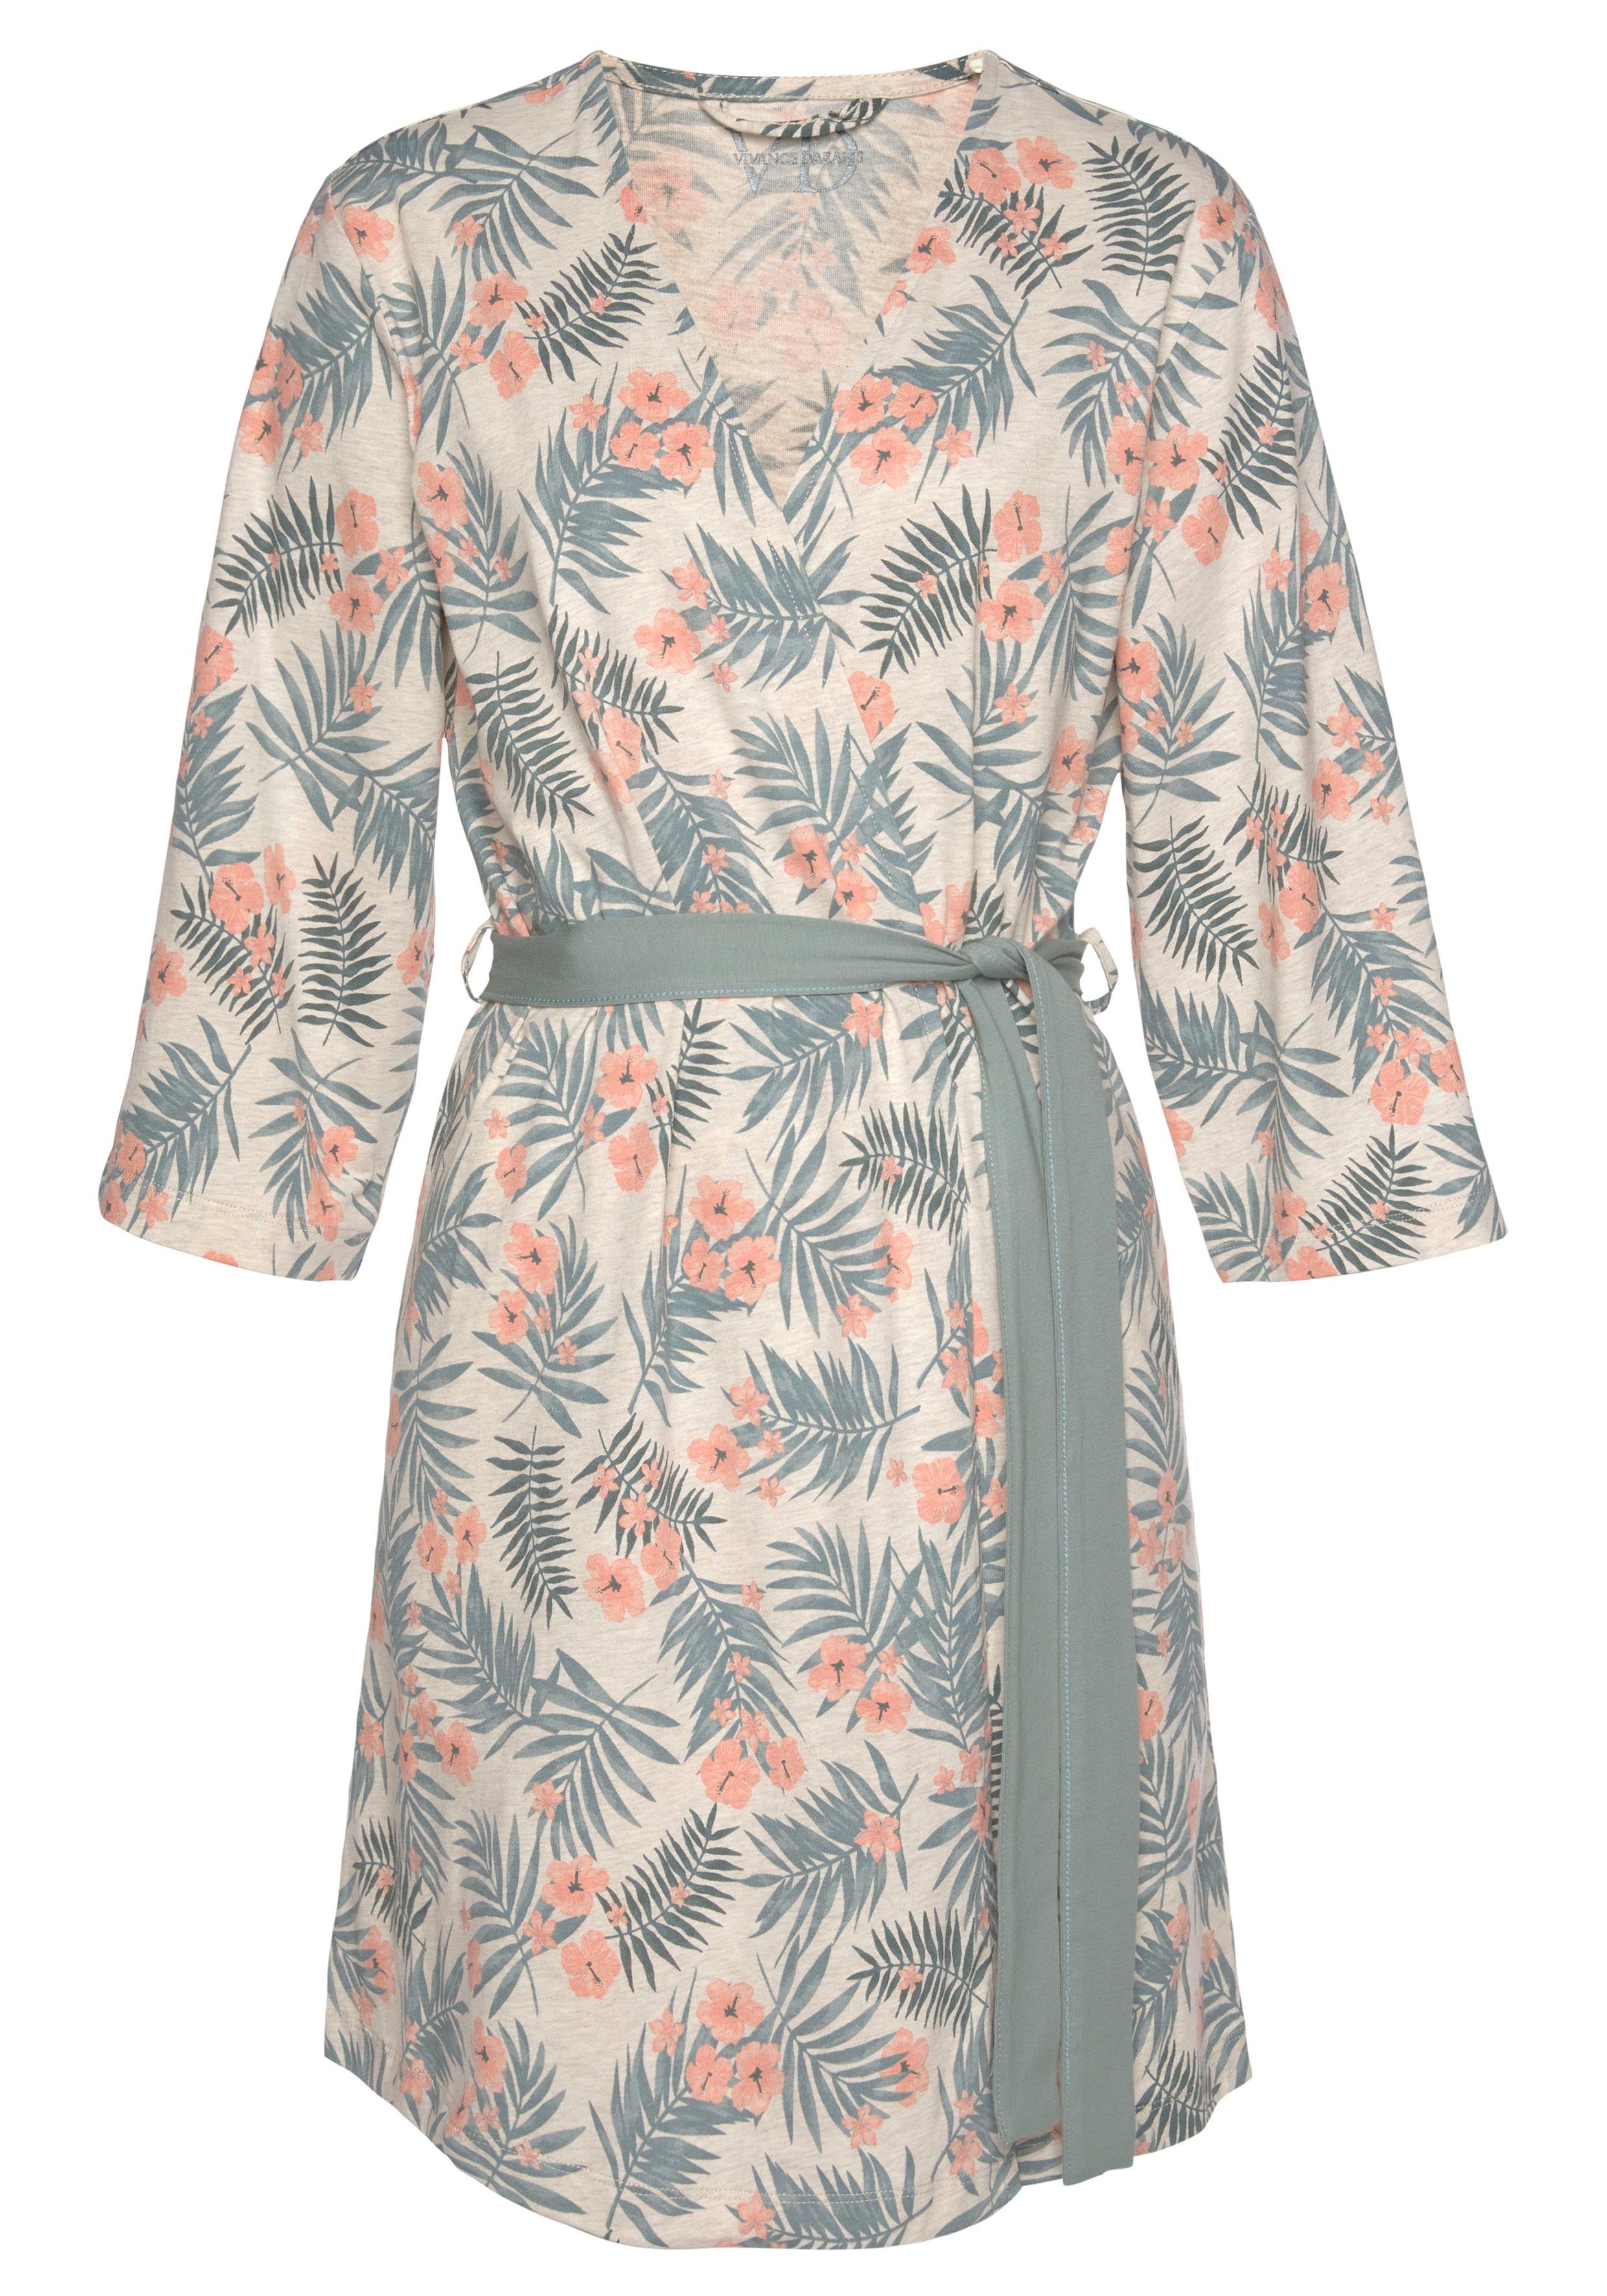 LASCANA Kimono, und in Kurzform, Gürtel, Baumwolle, uni sand-grün Allover-Druck